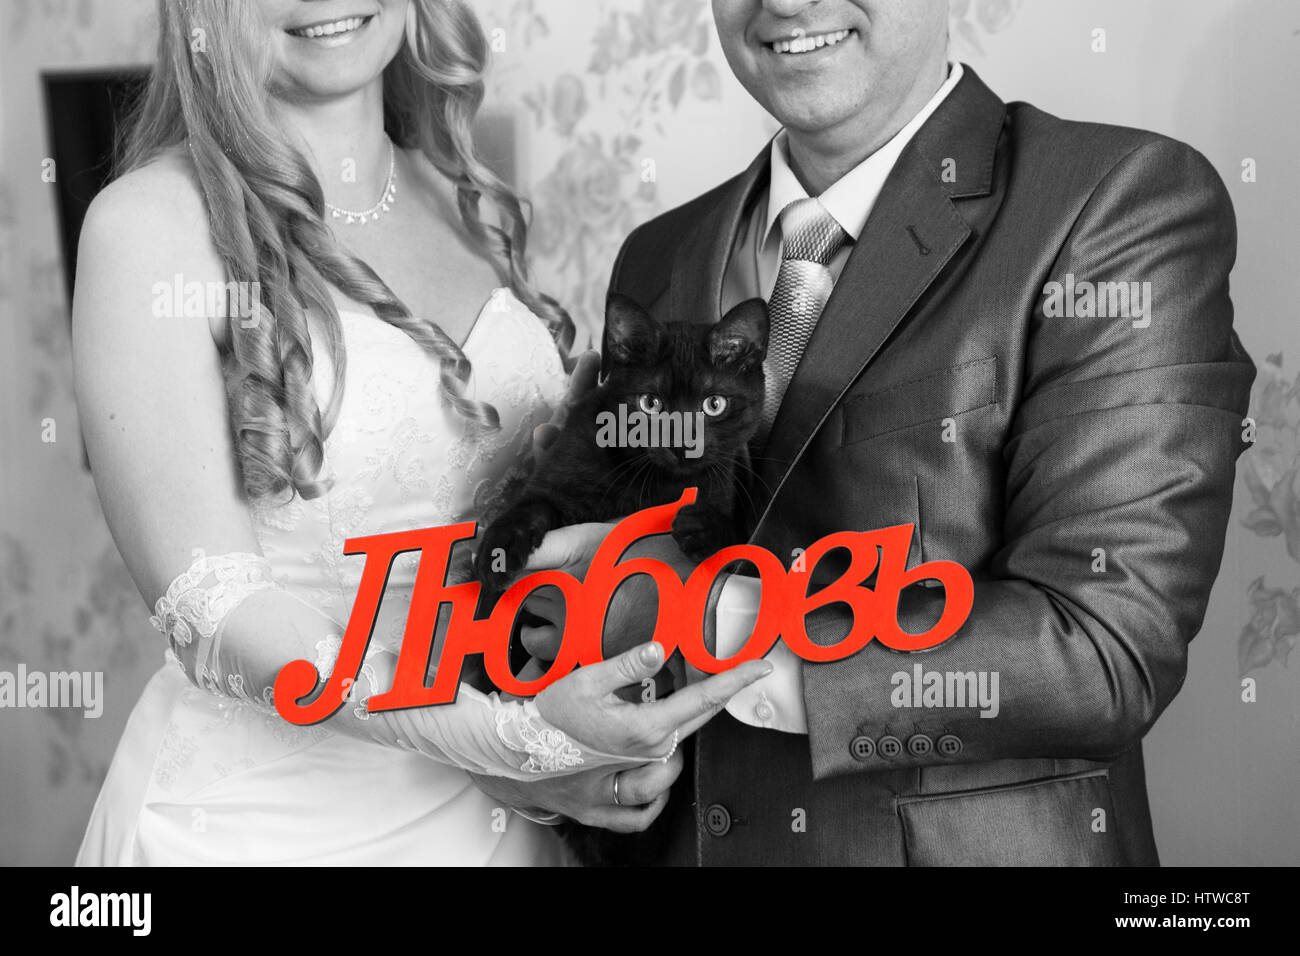 Gatto nero e la parola amore in russo nelle mani della sposa e lo sposo, immagine in bianco e nero con rosso iscrizione Foto Stock